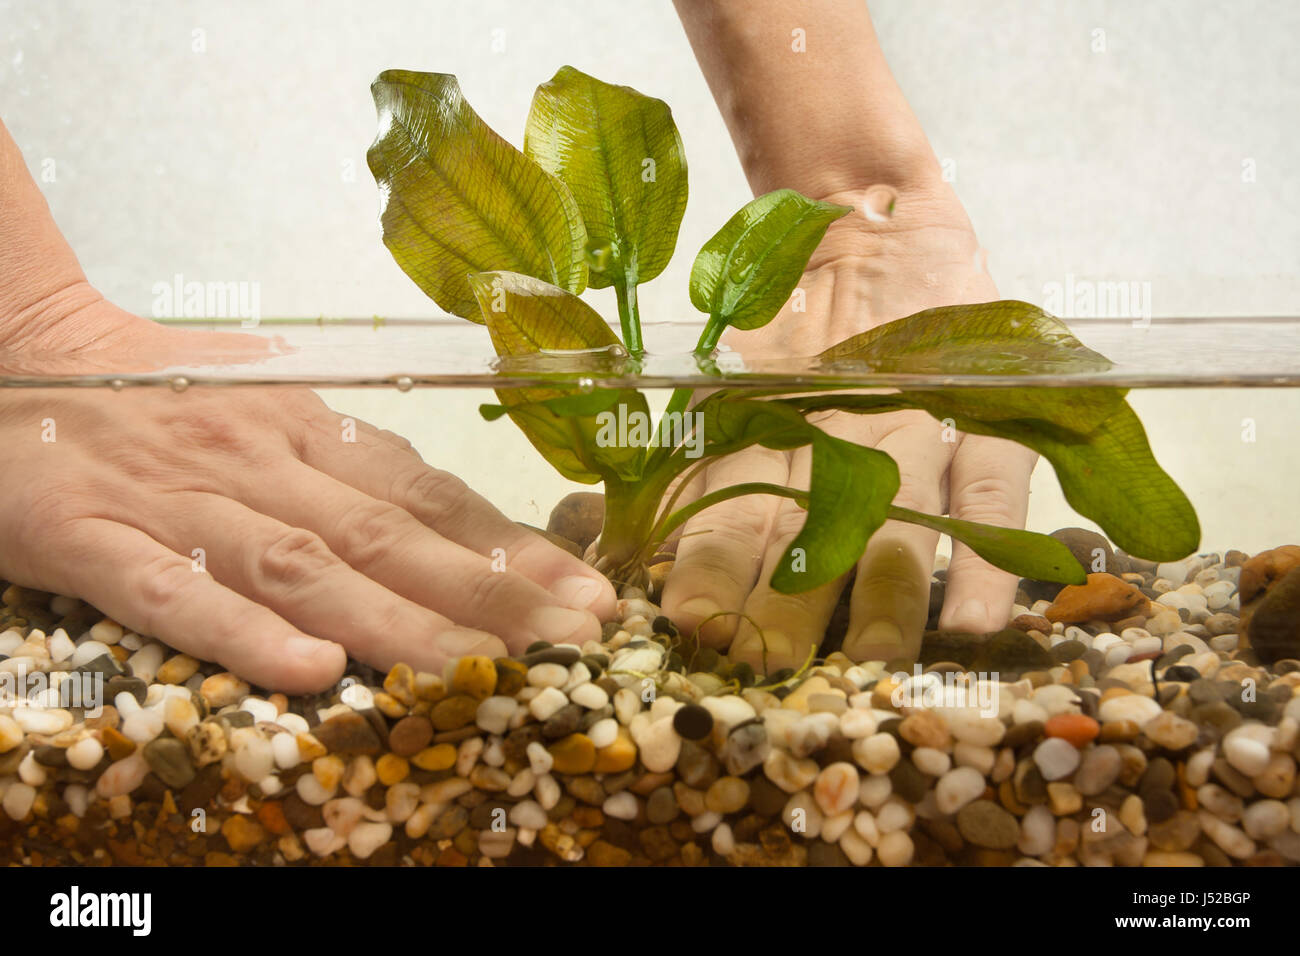 hands of aquarist planting water plant echinodorus in new aquarium Stock Photo